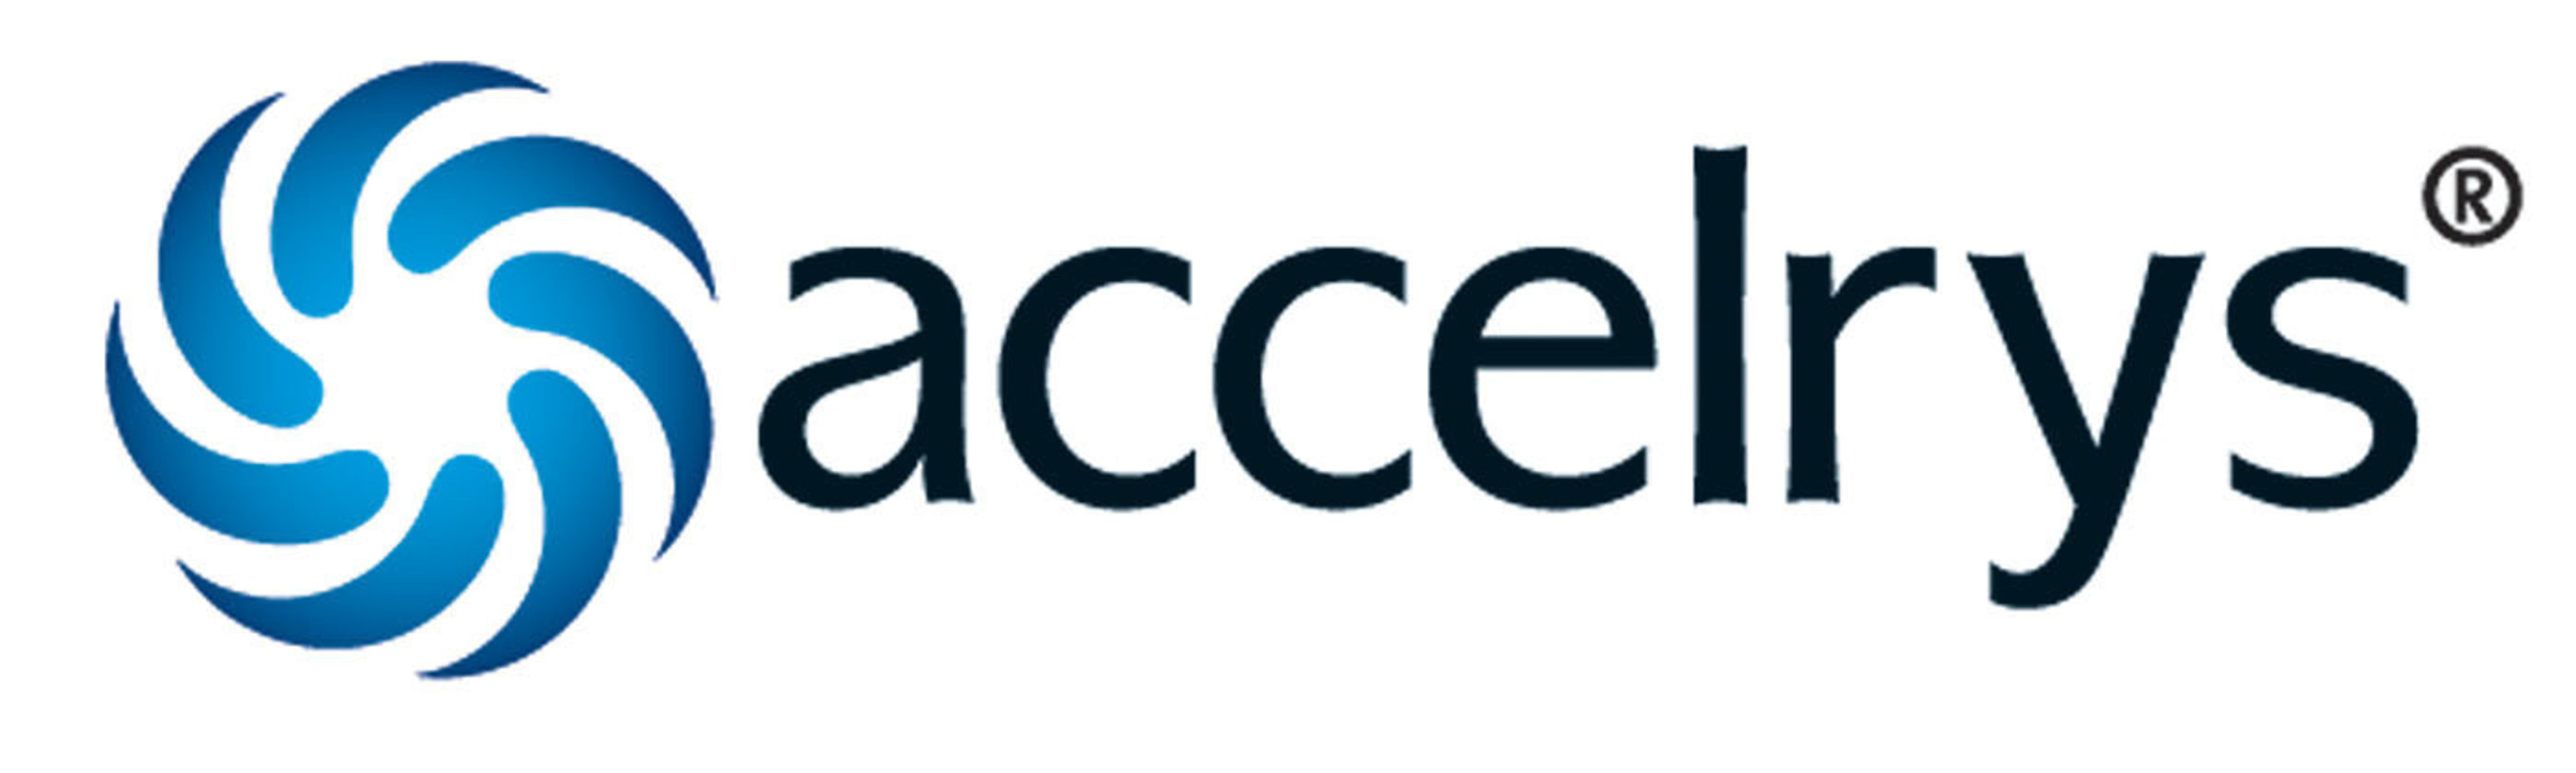 Accelrys, Inc. Logo. (PRNewsFoto/Accelrys, Inc.) (PRNewsFoto/)